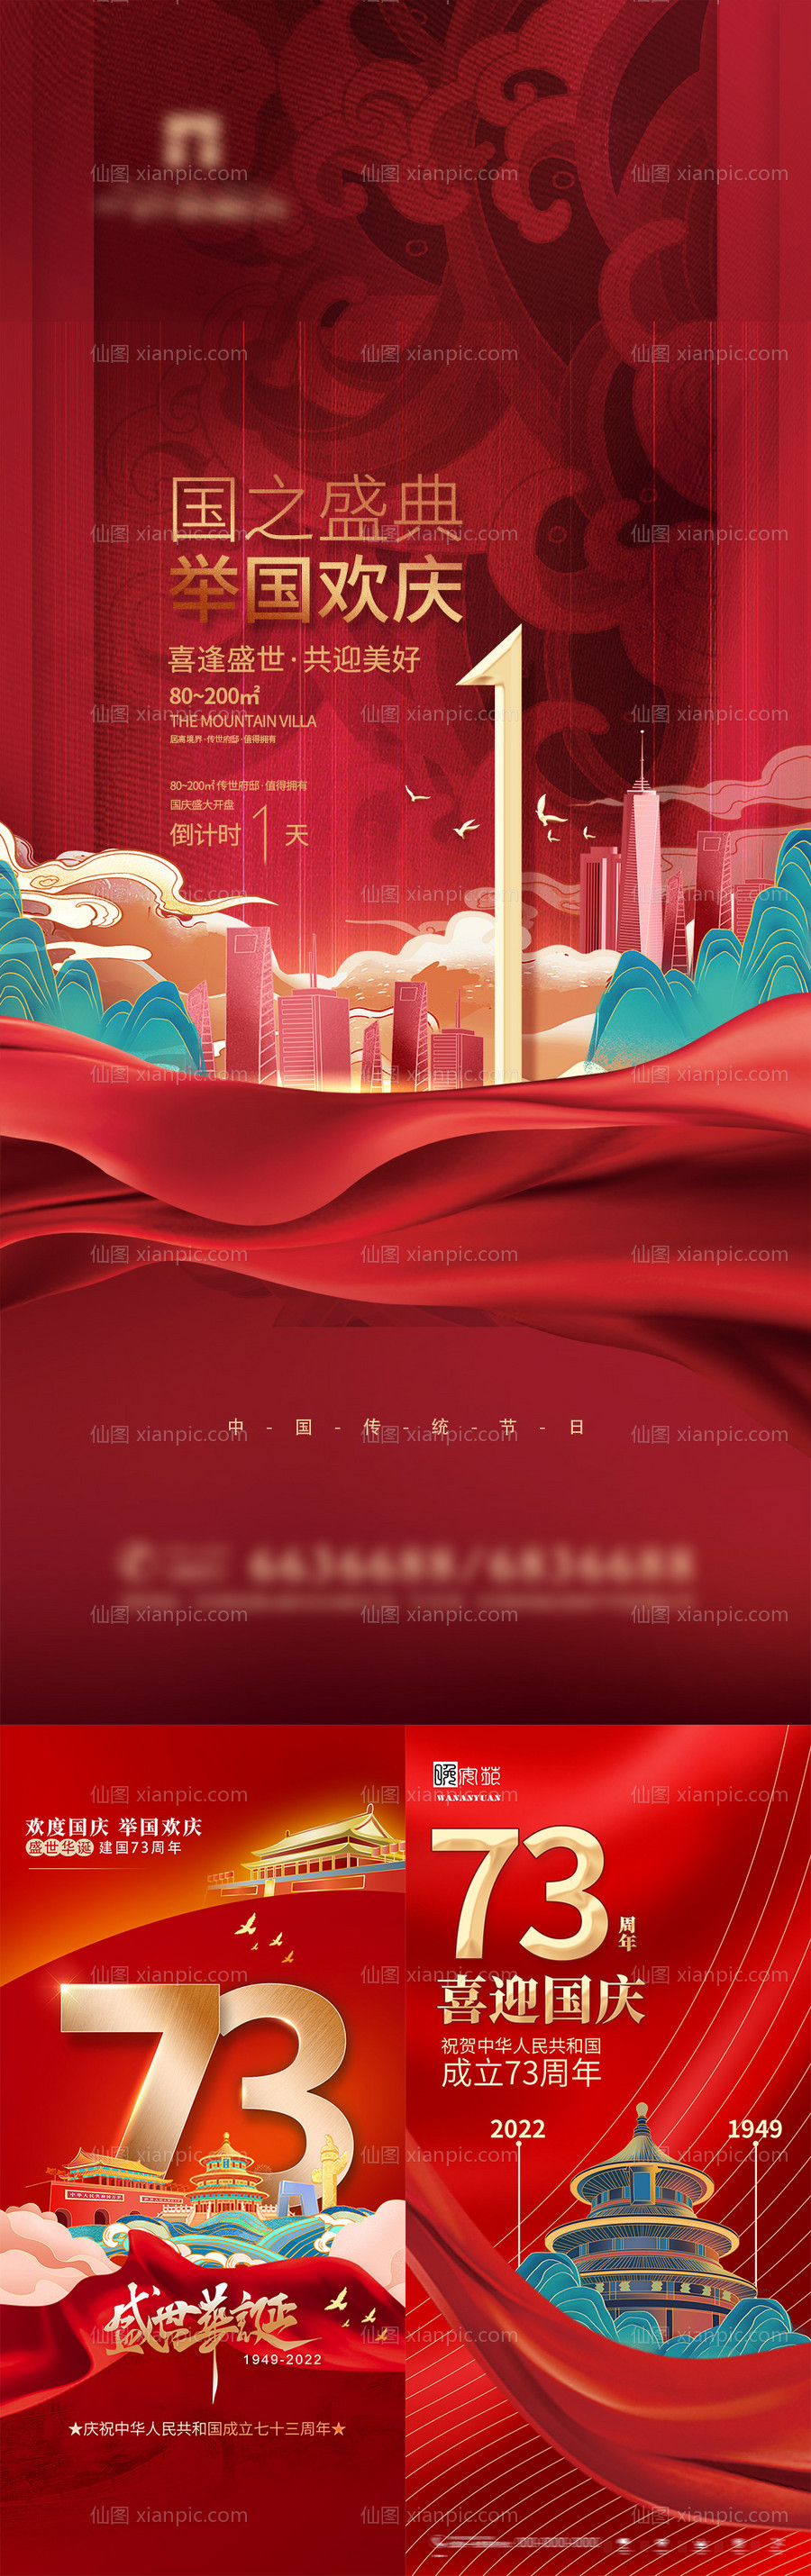 素材乐-地产国庆节系列海报